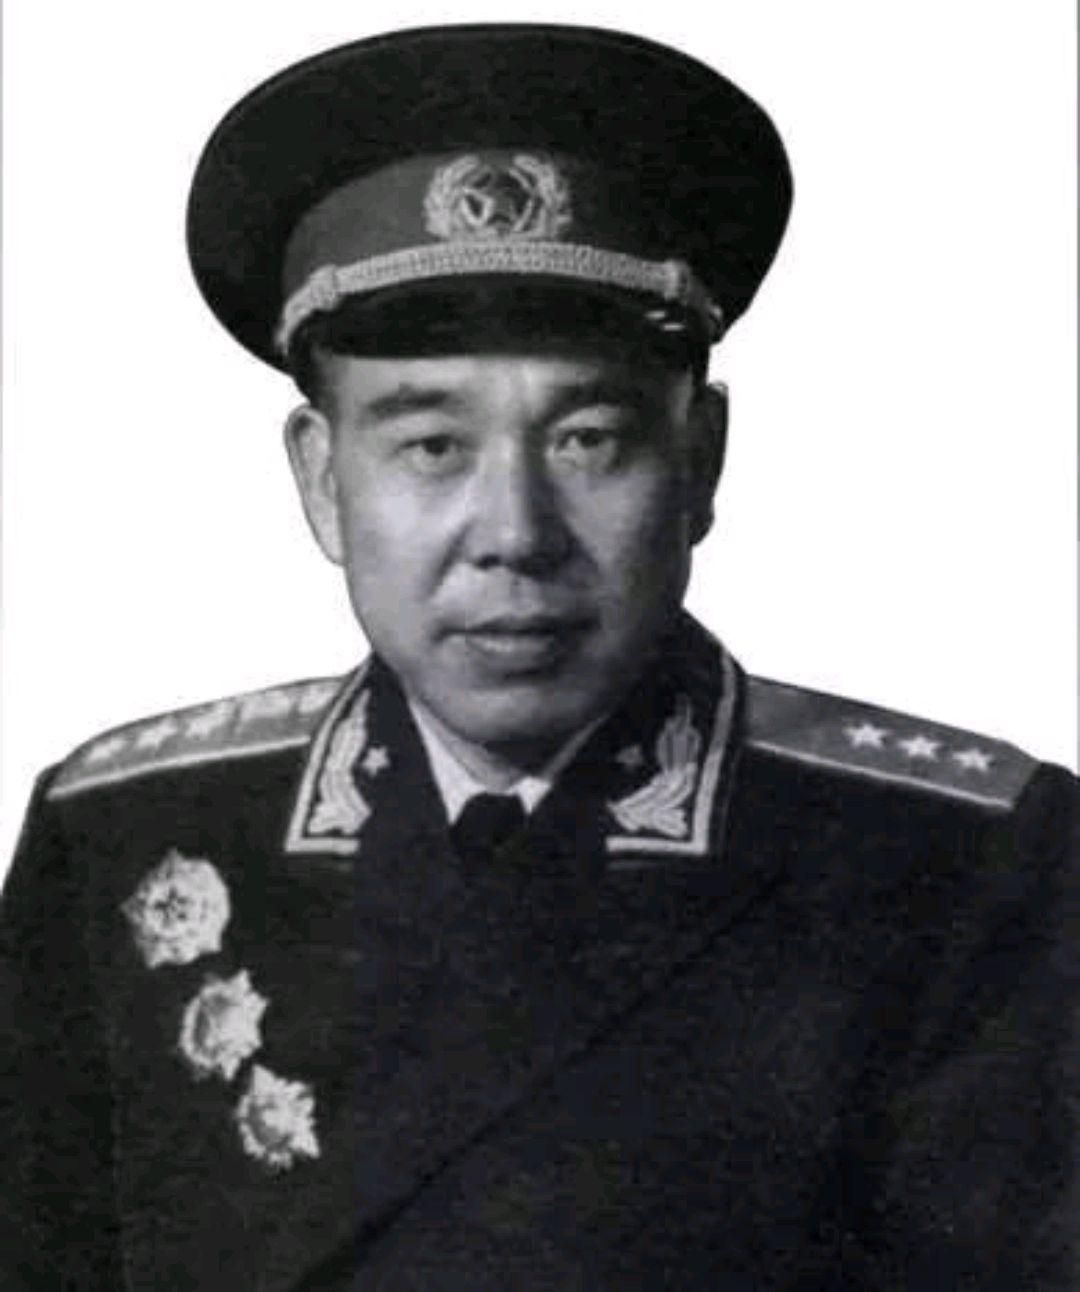 尽管黄永胜在沙场上屡立战功，在红军中威望很高，但是当时红军的许多将领们都不愿意与黄永胜共事。